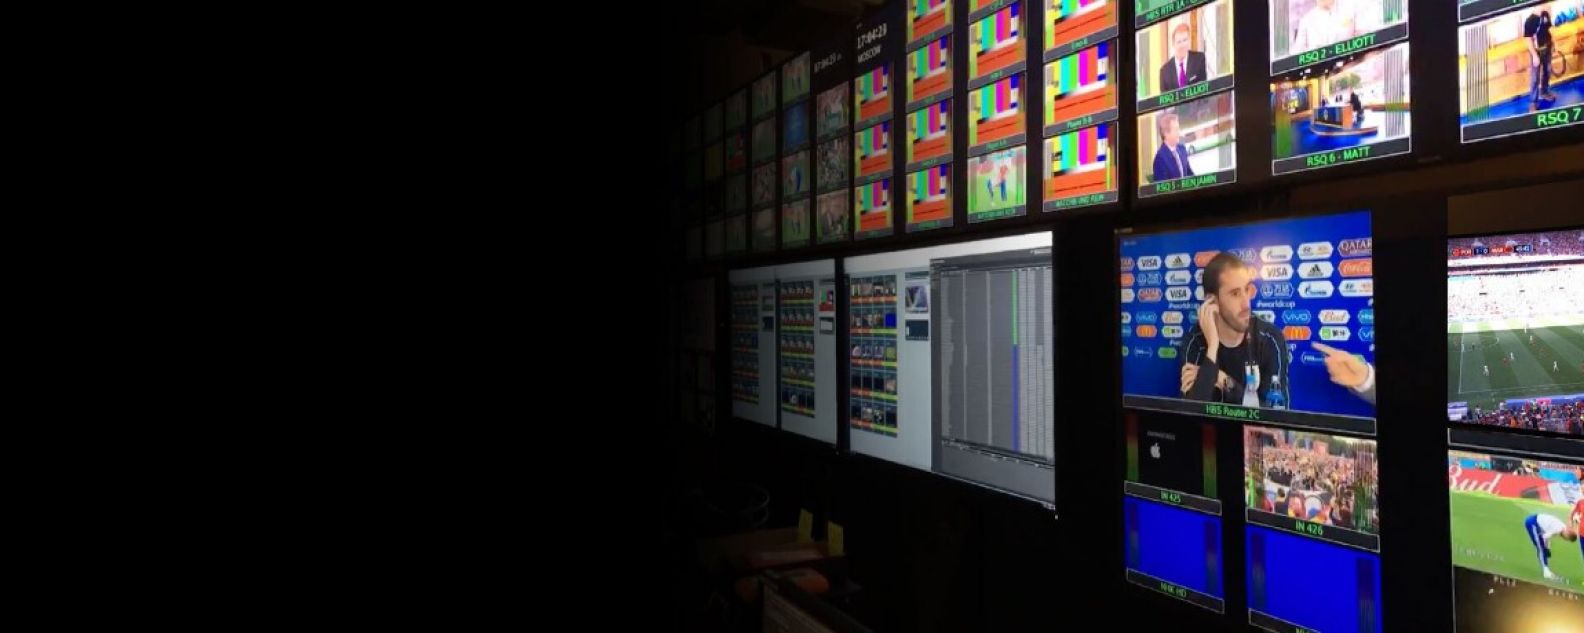 Grande parede de monitores exibindo transmissões esportivas e entrevistas